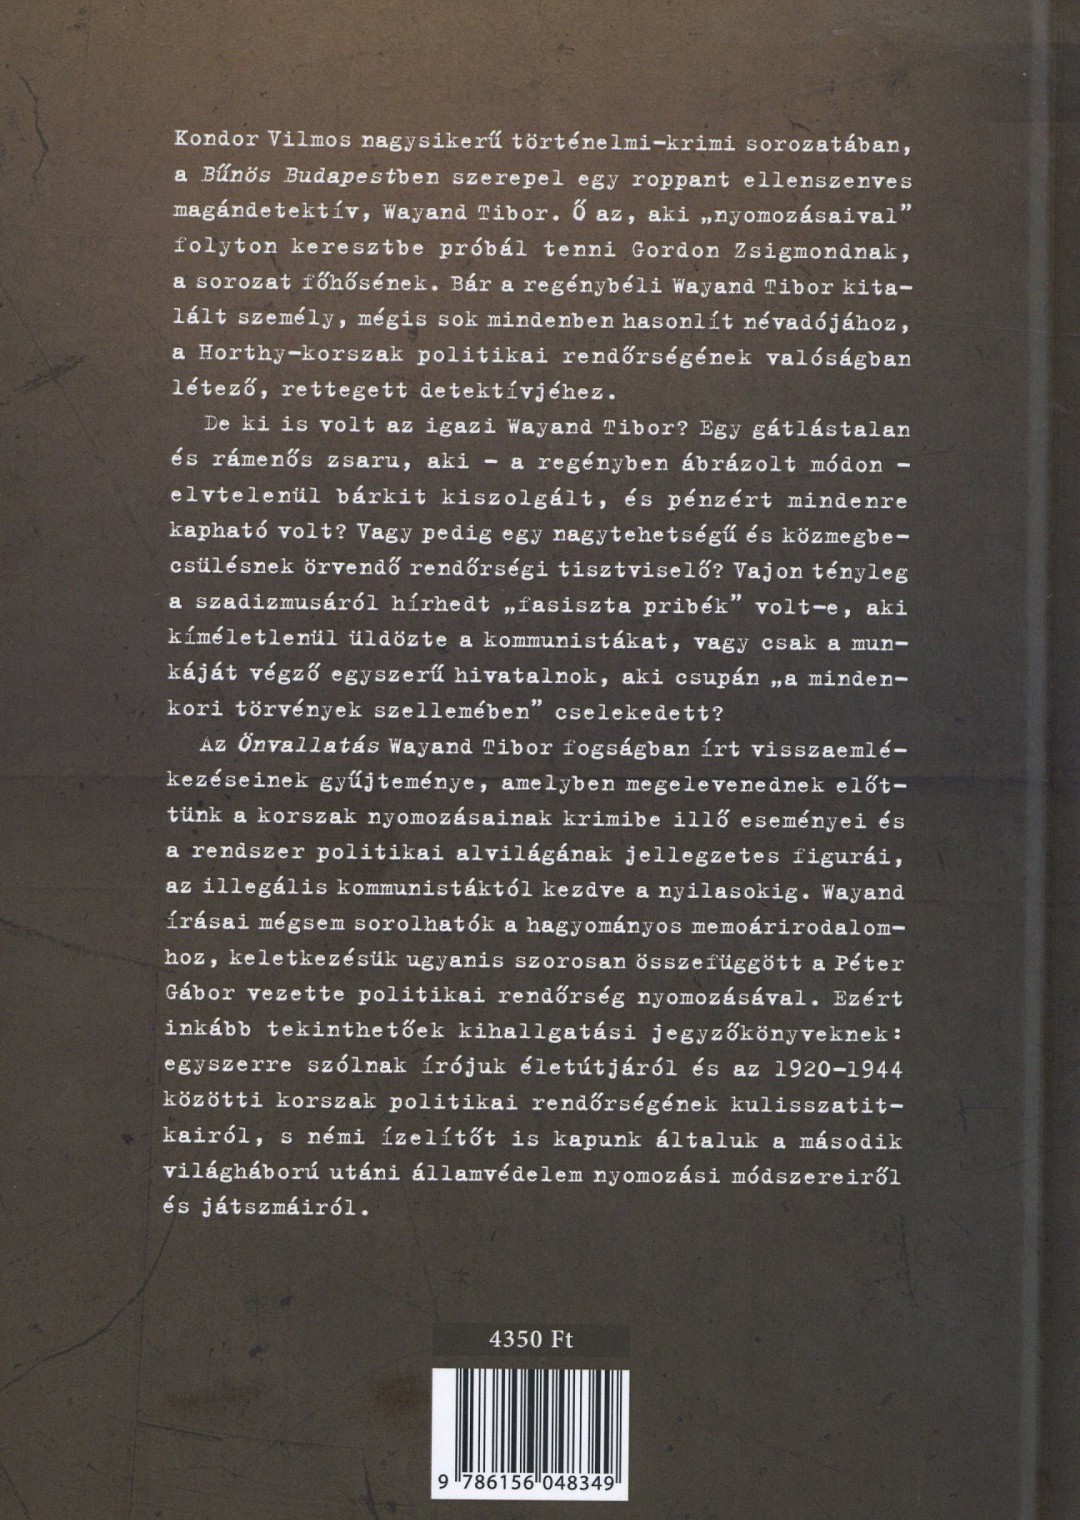 Önvallatás - Wayand Tibor fogságban írt visszaemlékezései 1945-1946 hátlapja